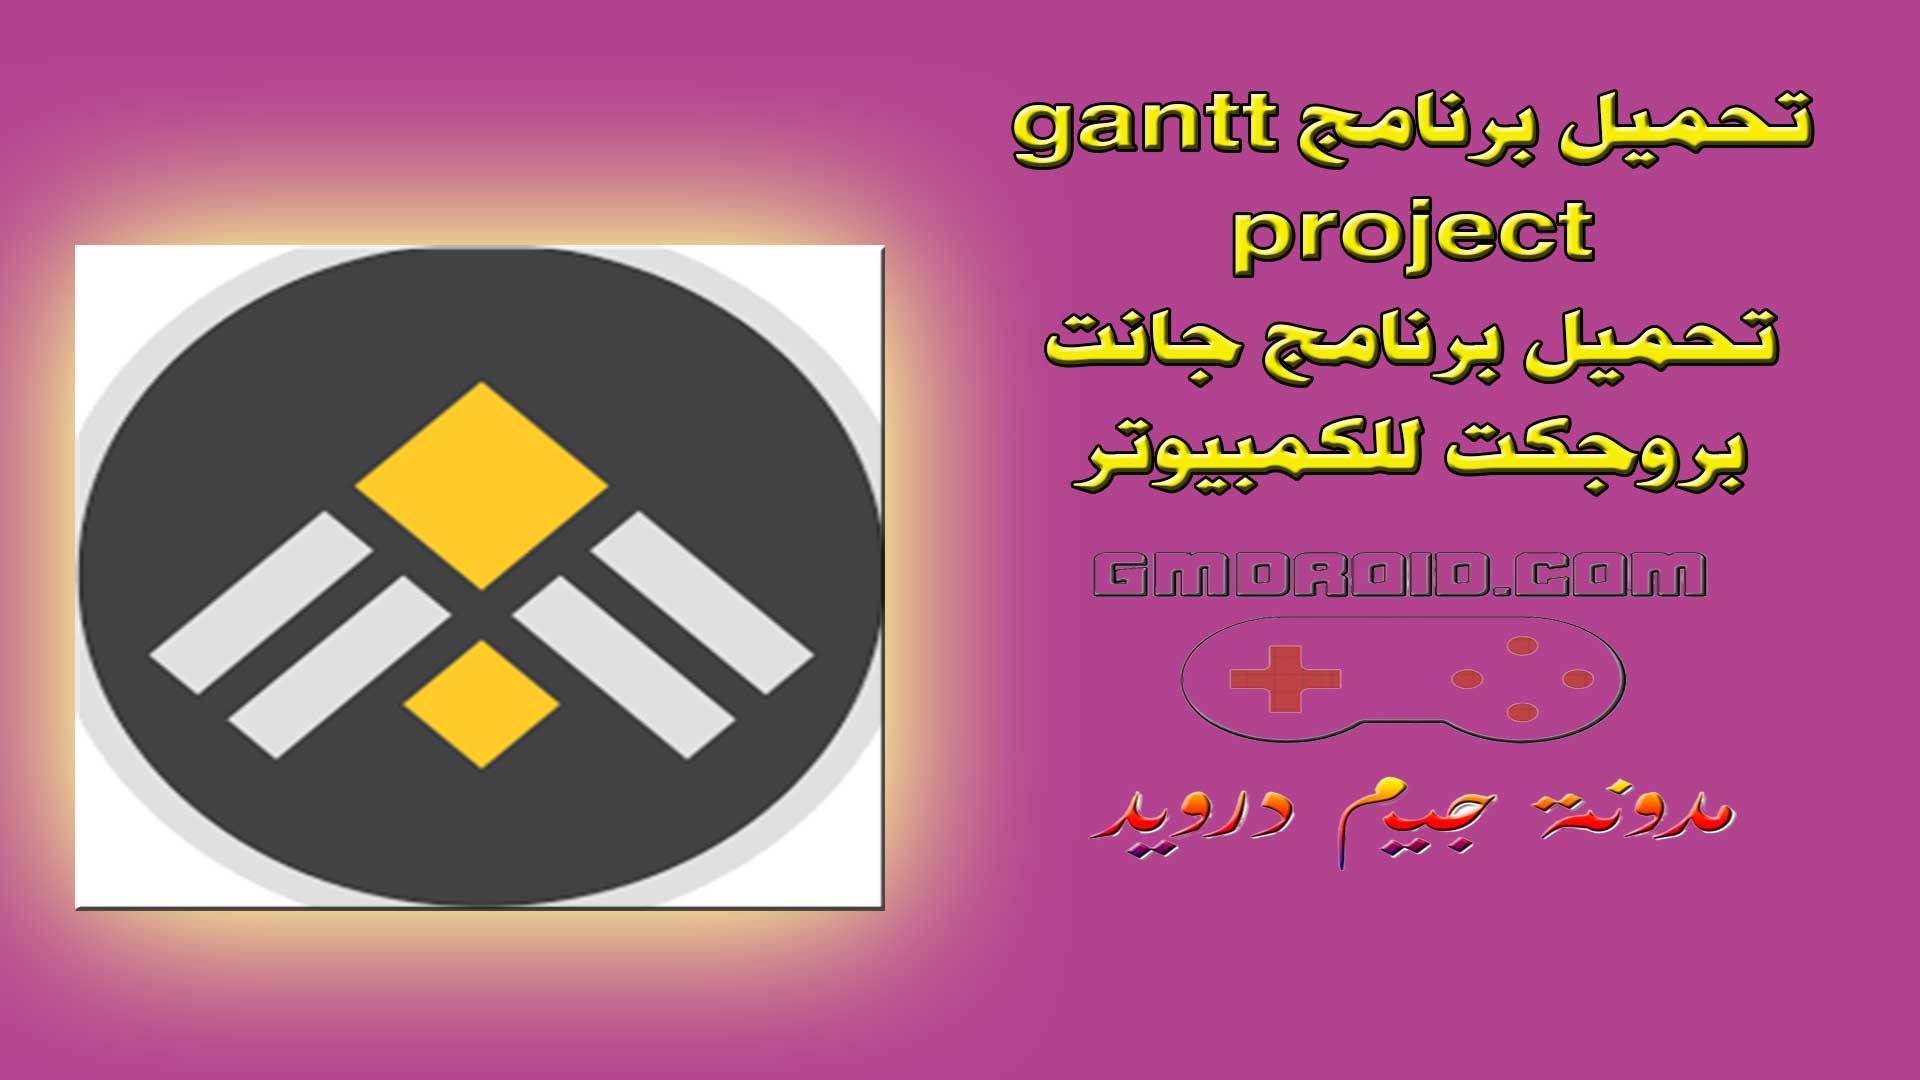 تحميل برنامج gantt project - تحميل برنامج جانت بروجكت للكمبيوتر